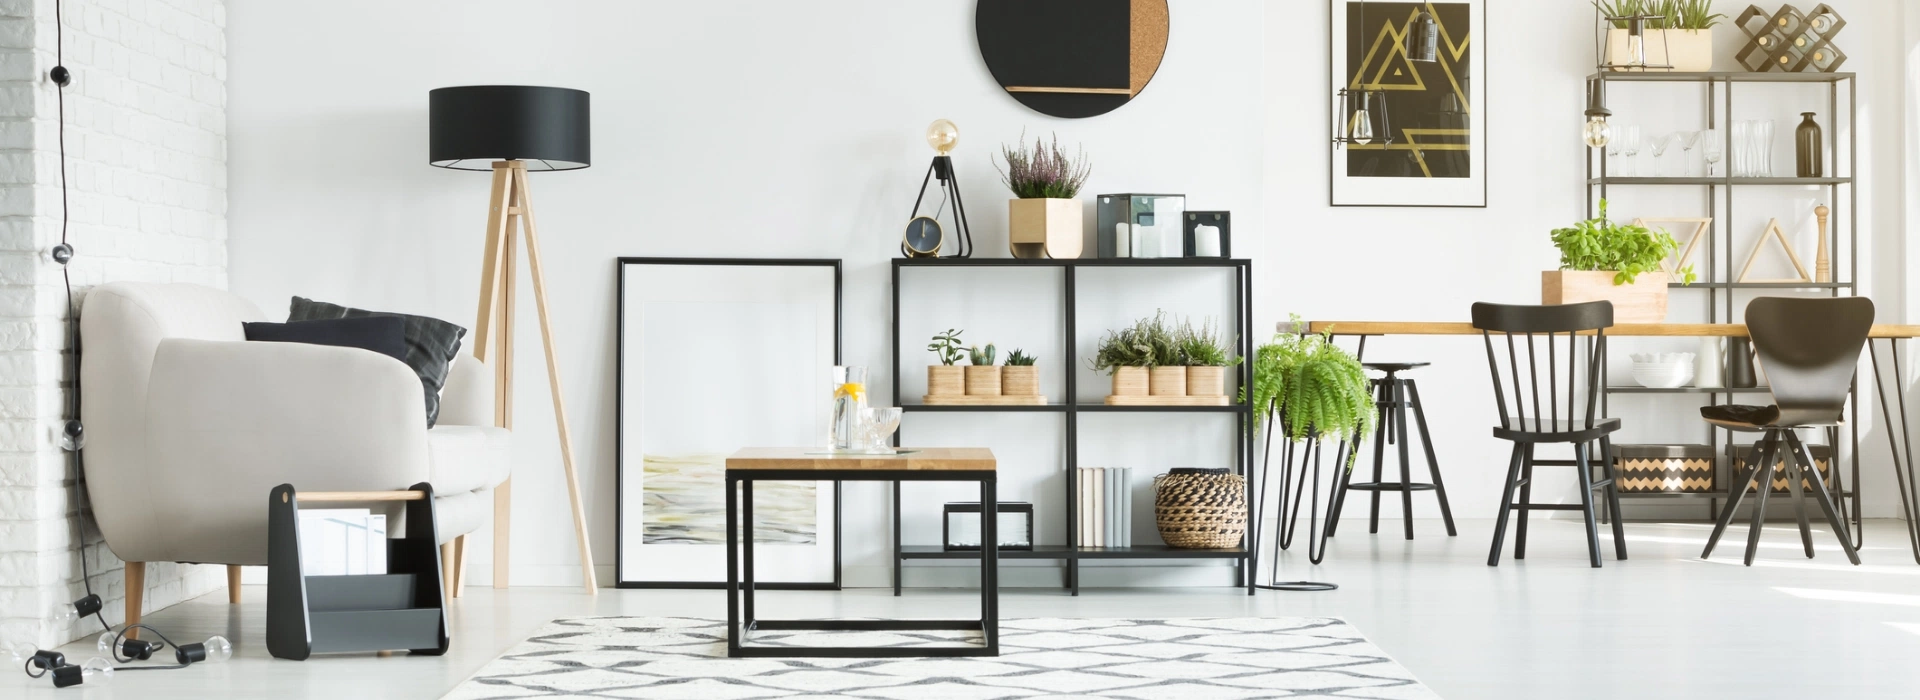 salon z minimalistycznymi meblami